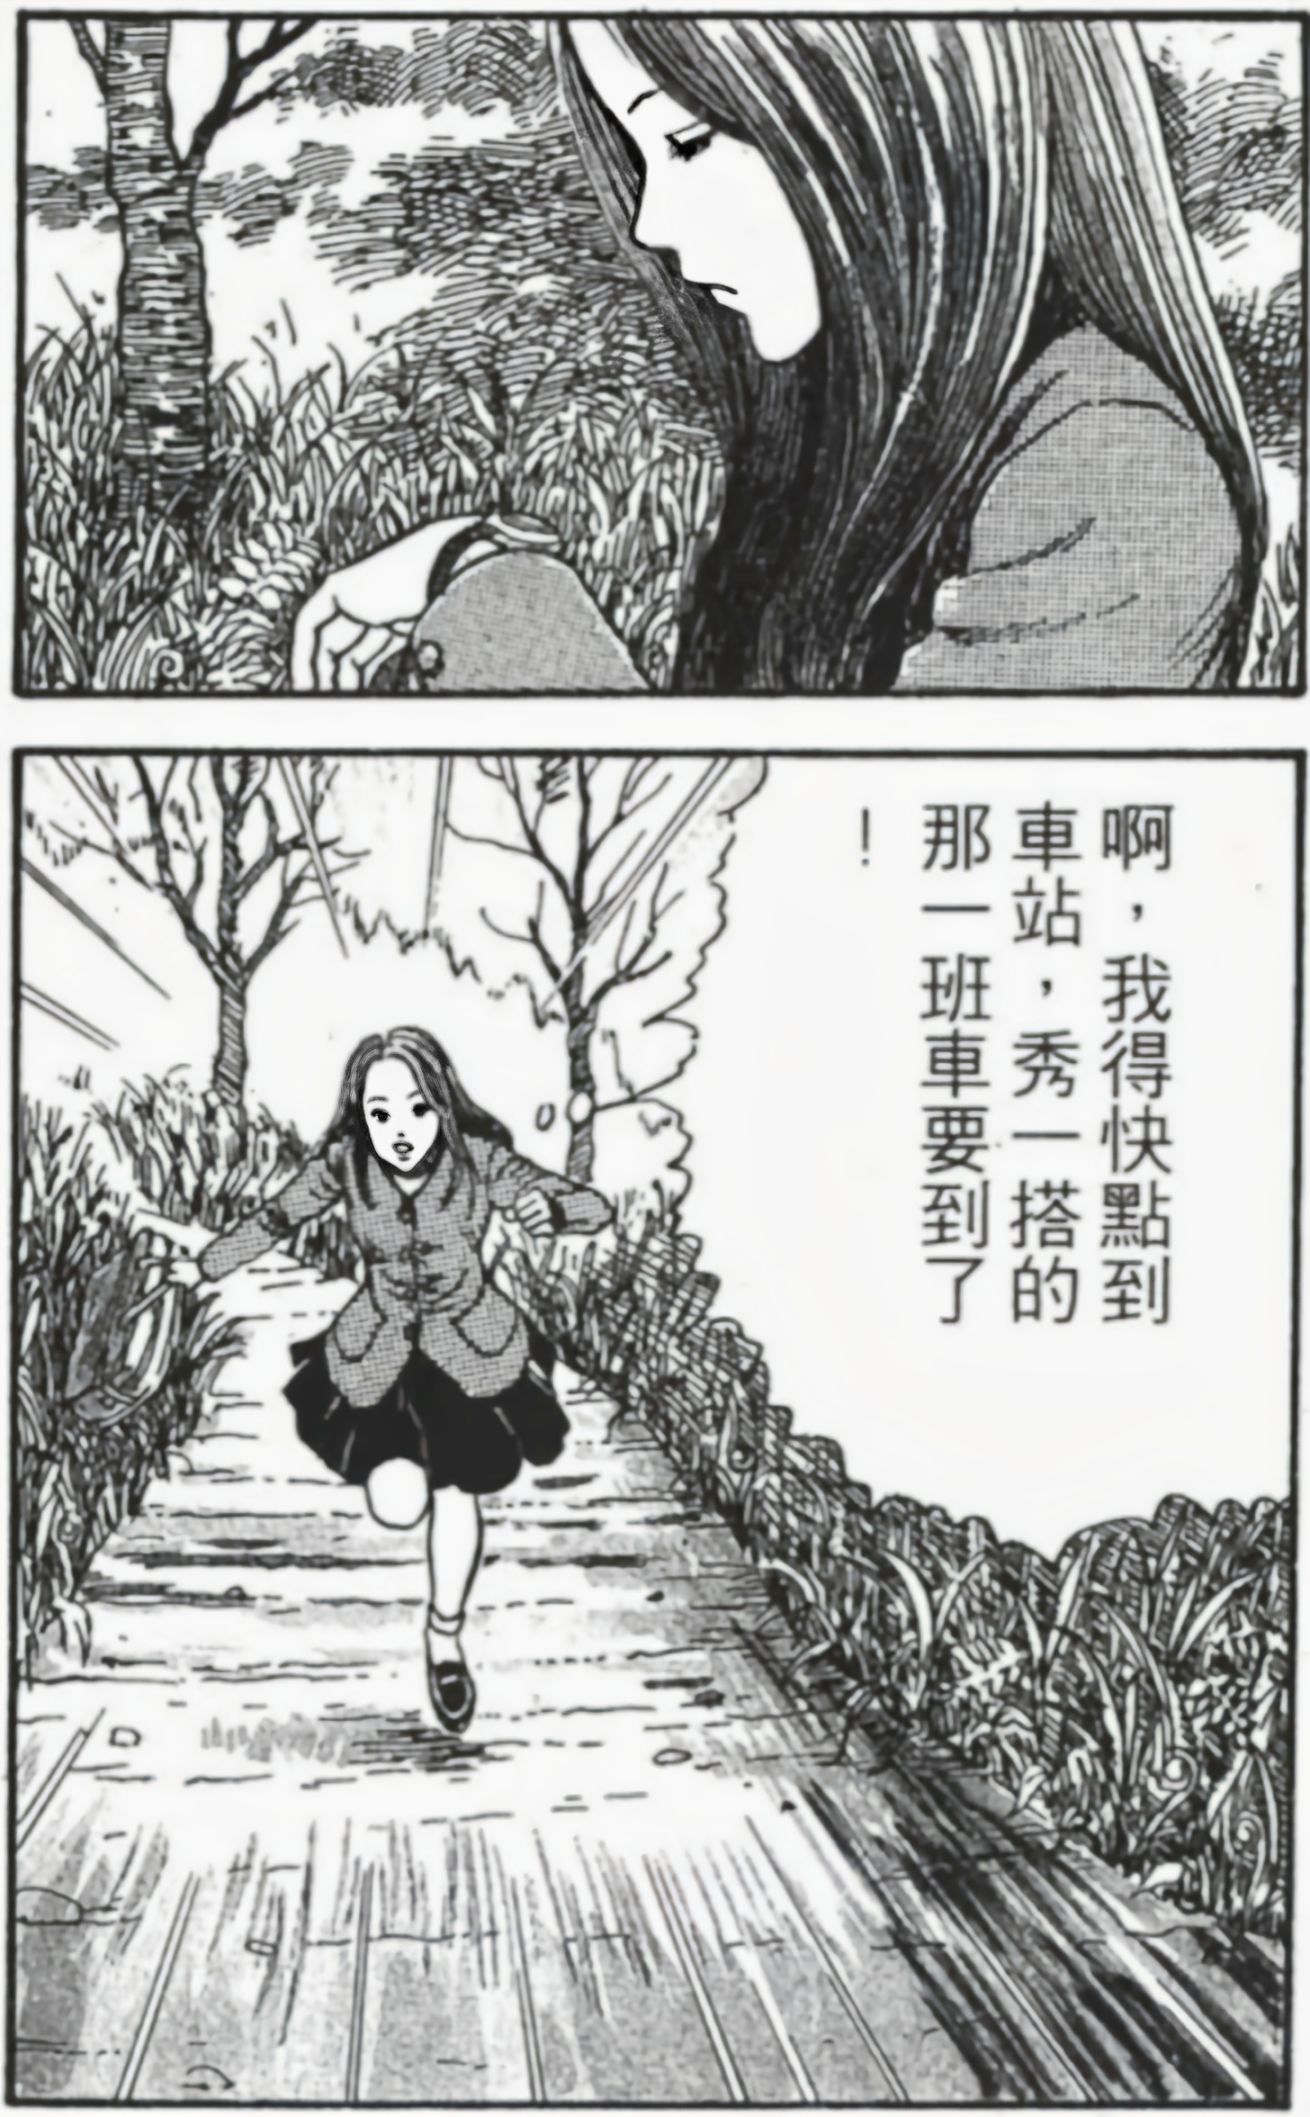 【影視動漫】伊藤潤二的恐怖漫畫《漩渦》-第6張